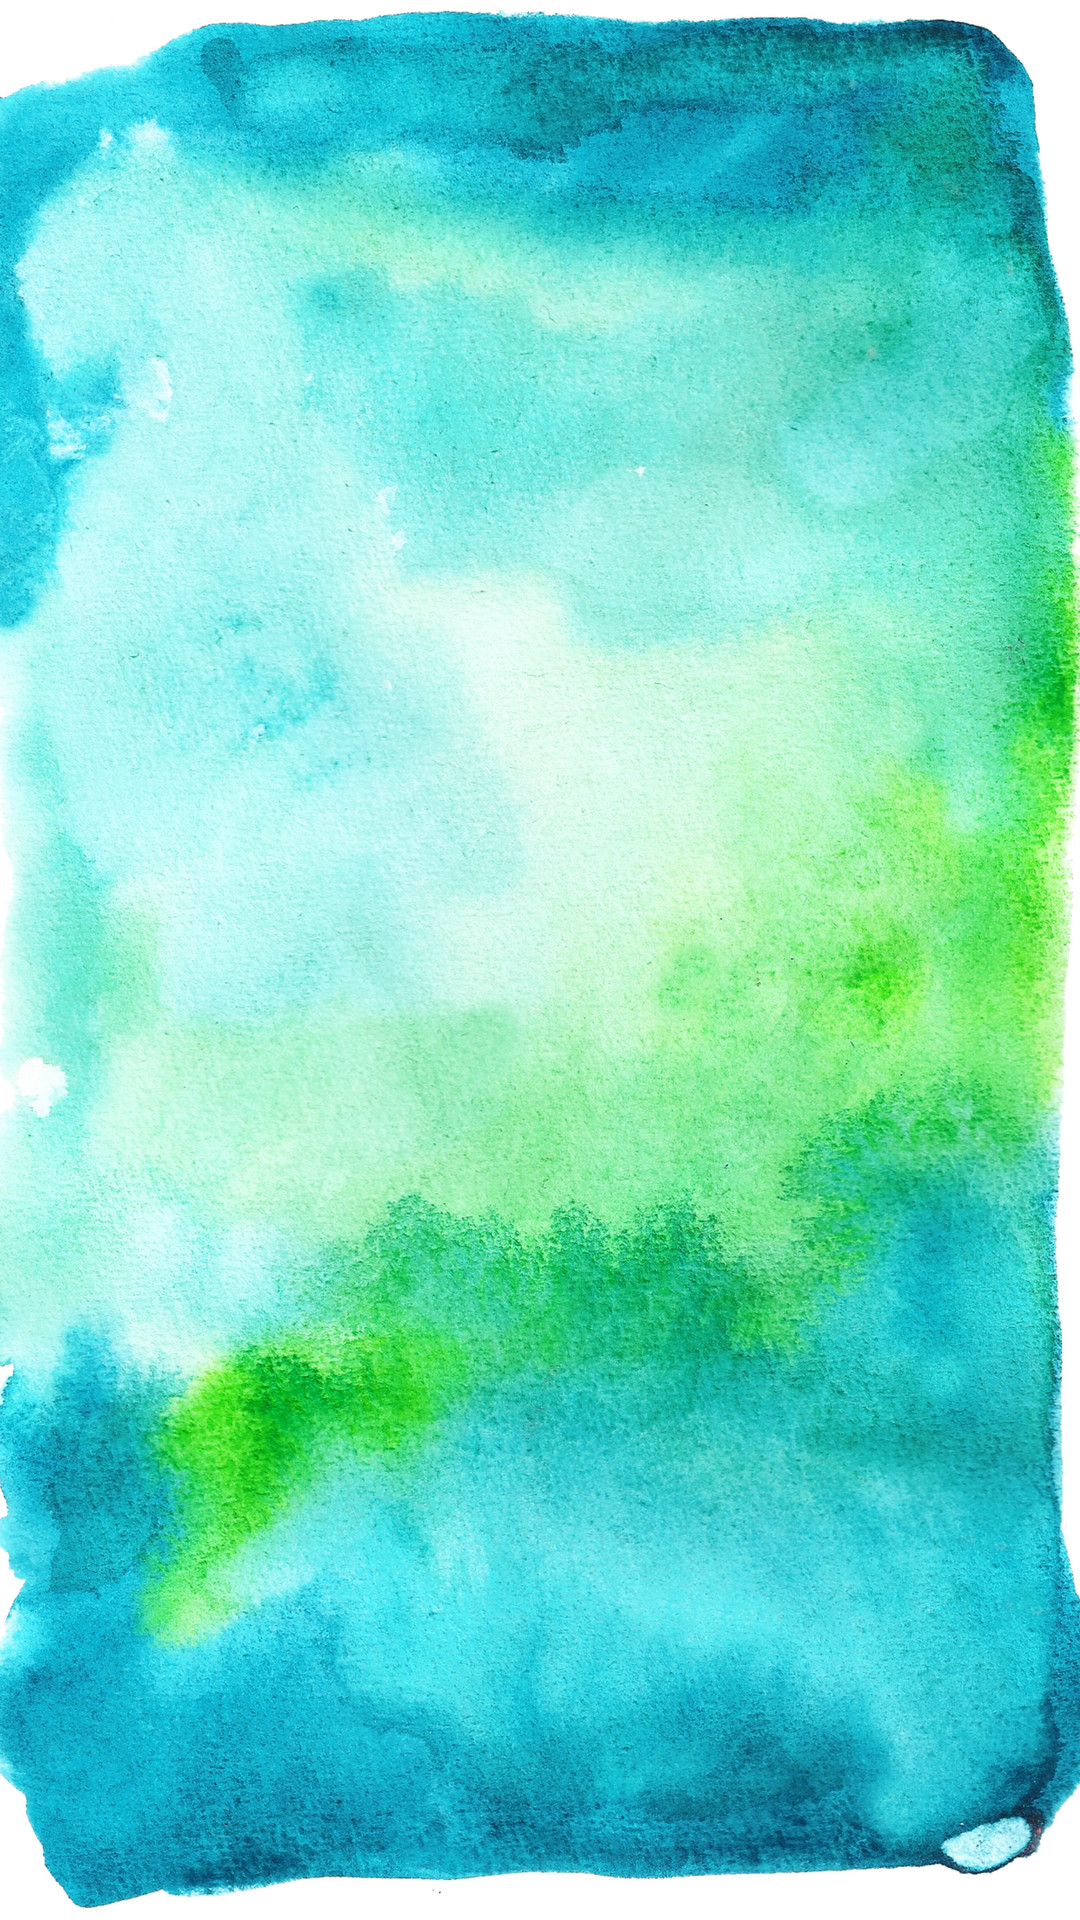 watercolor wallpaper,green,blue,aqua,sky,turquoise